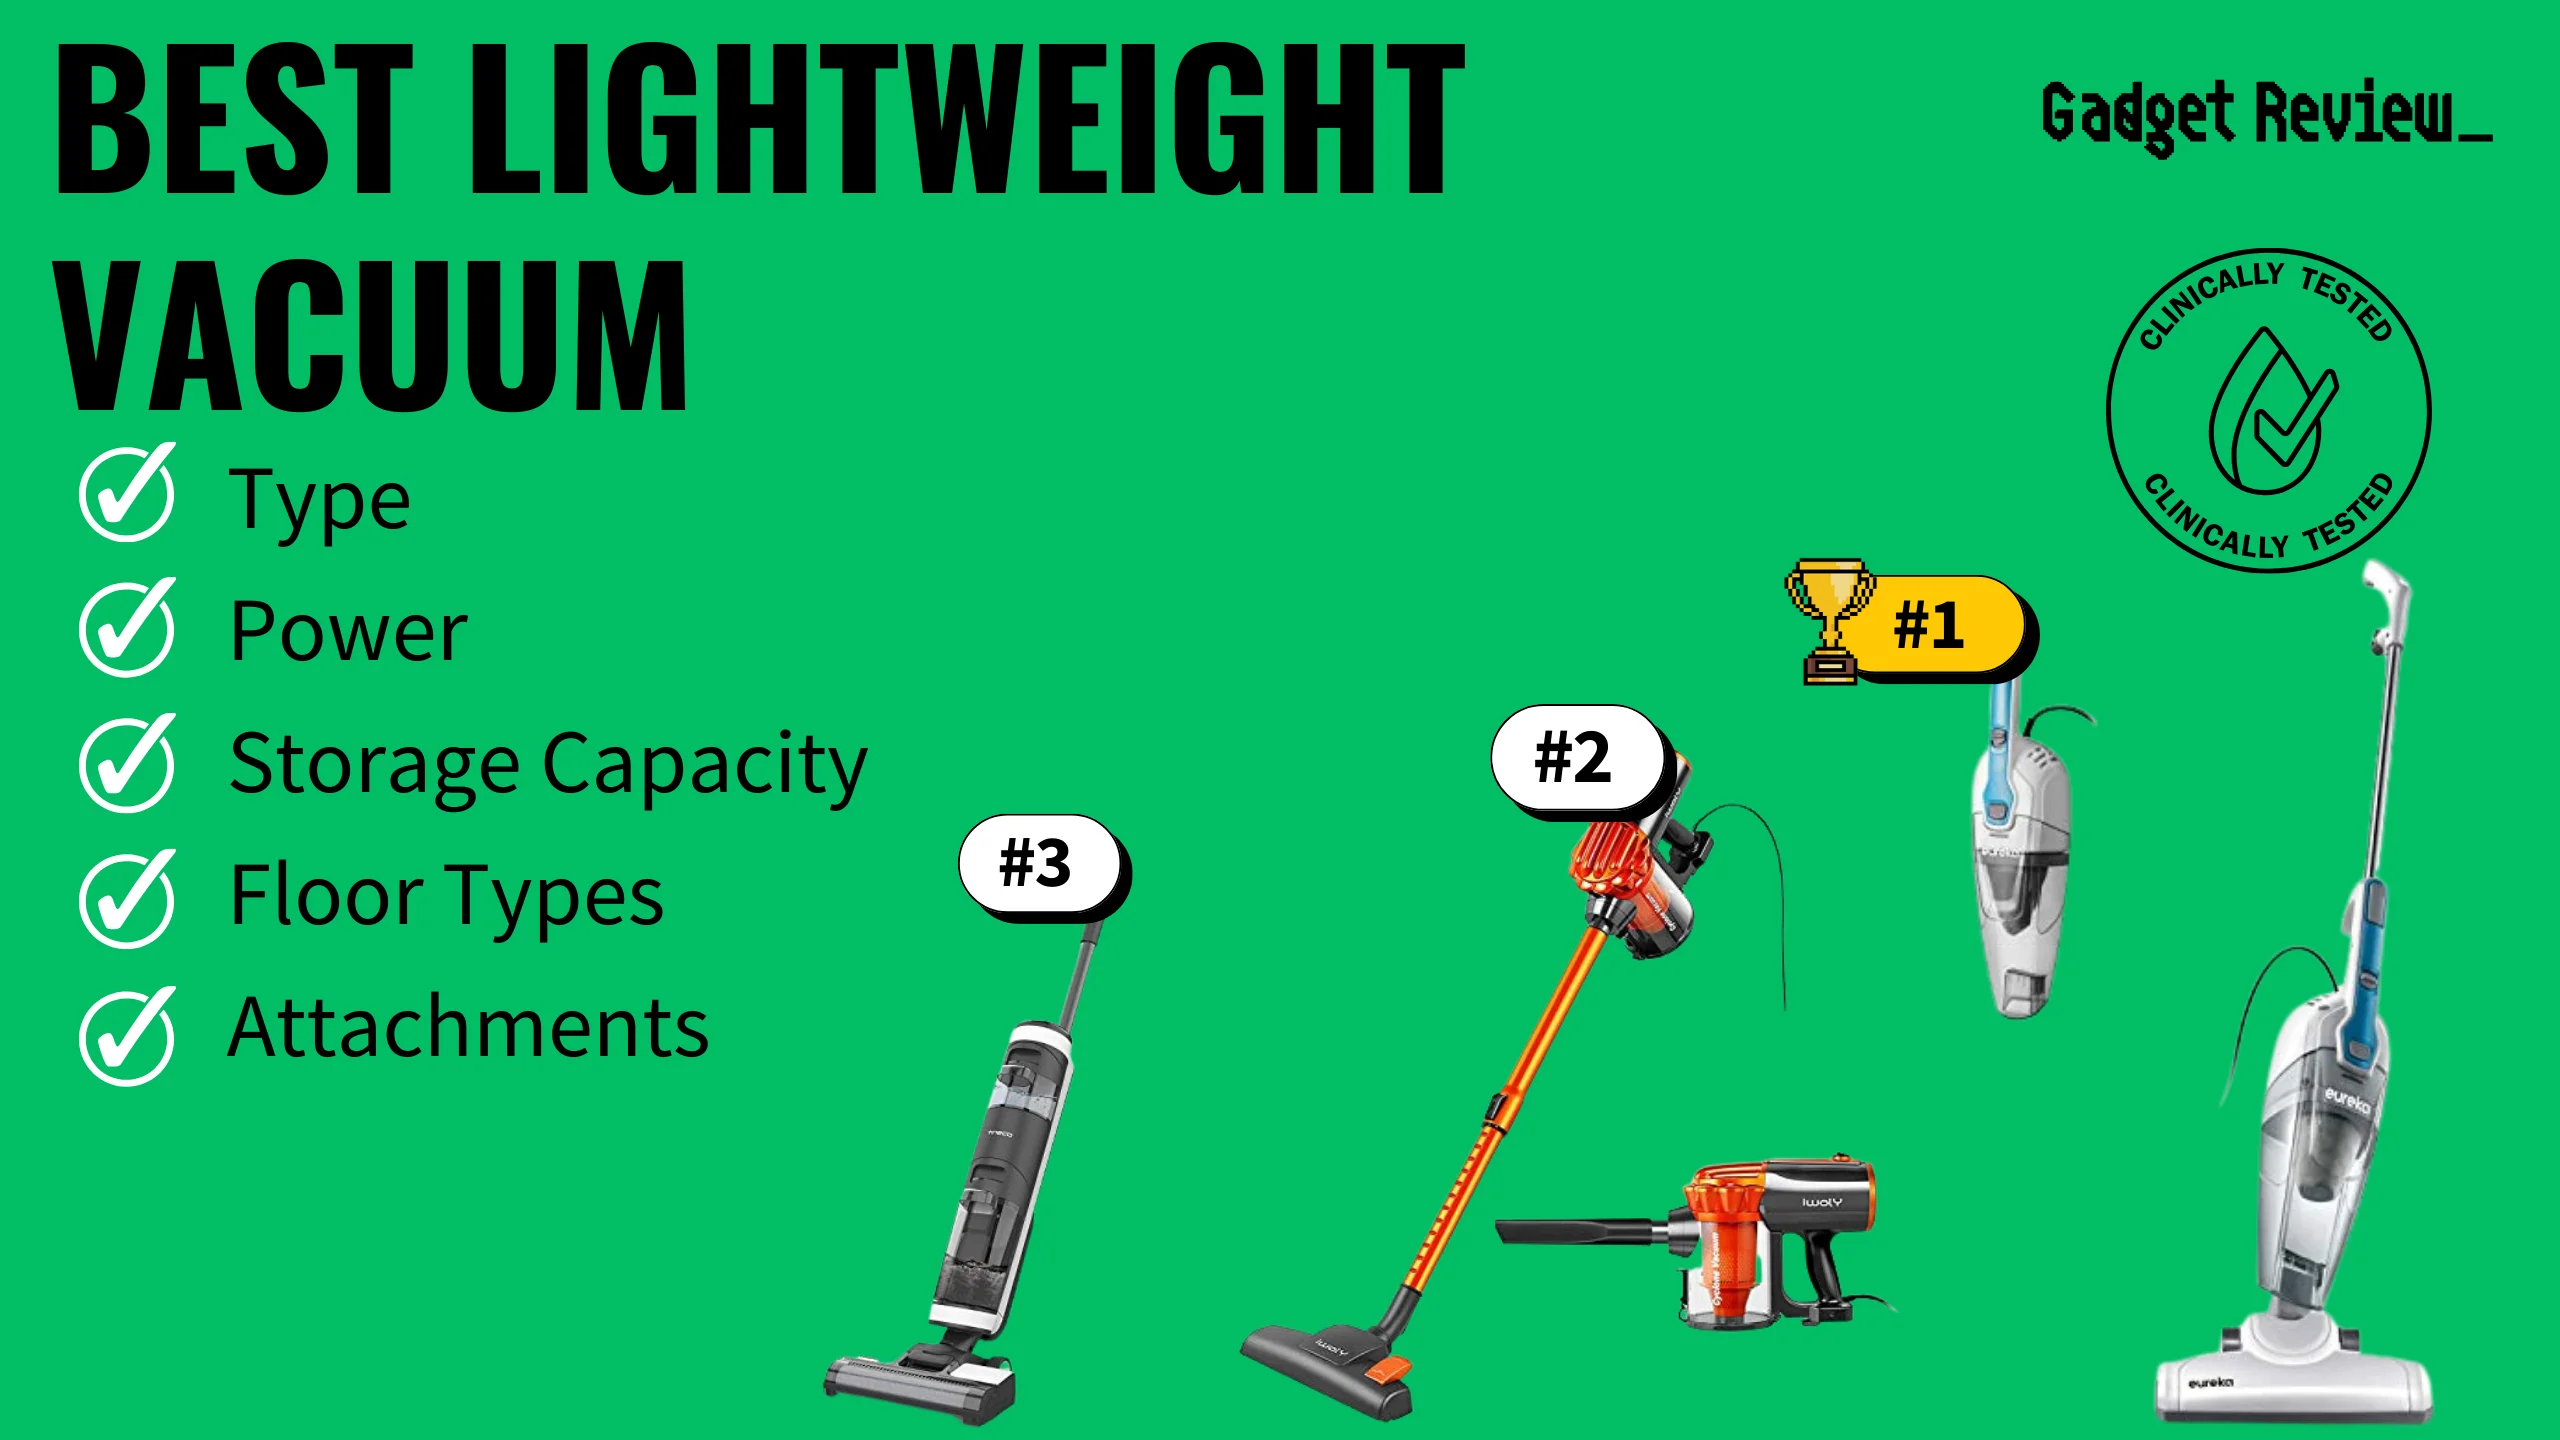 Best Lightweight Vacuums